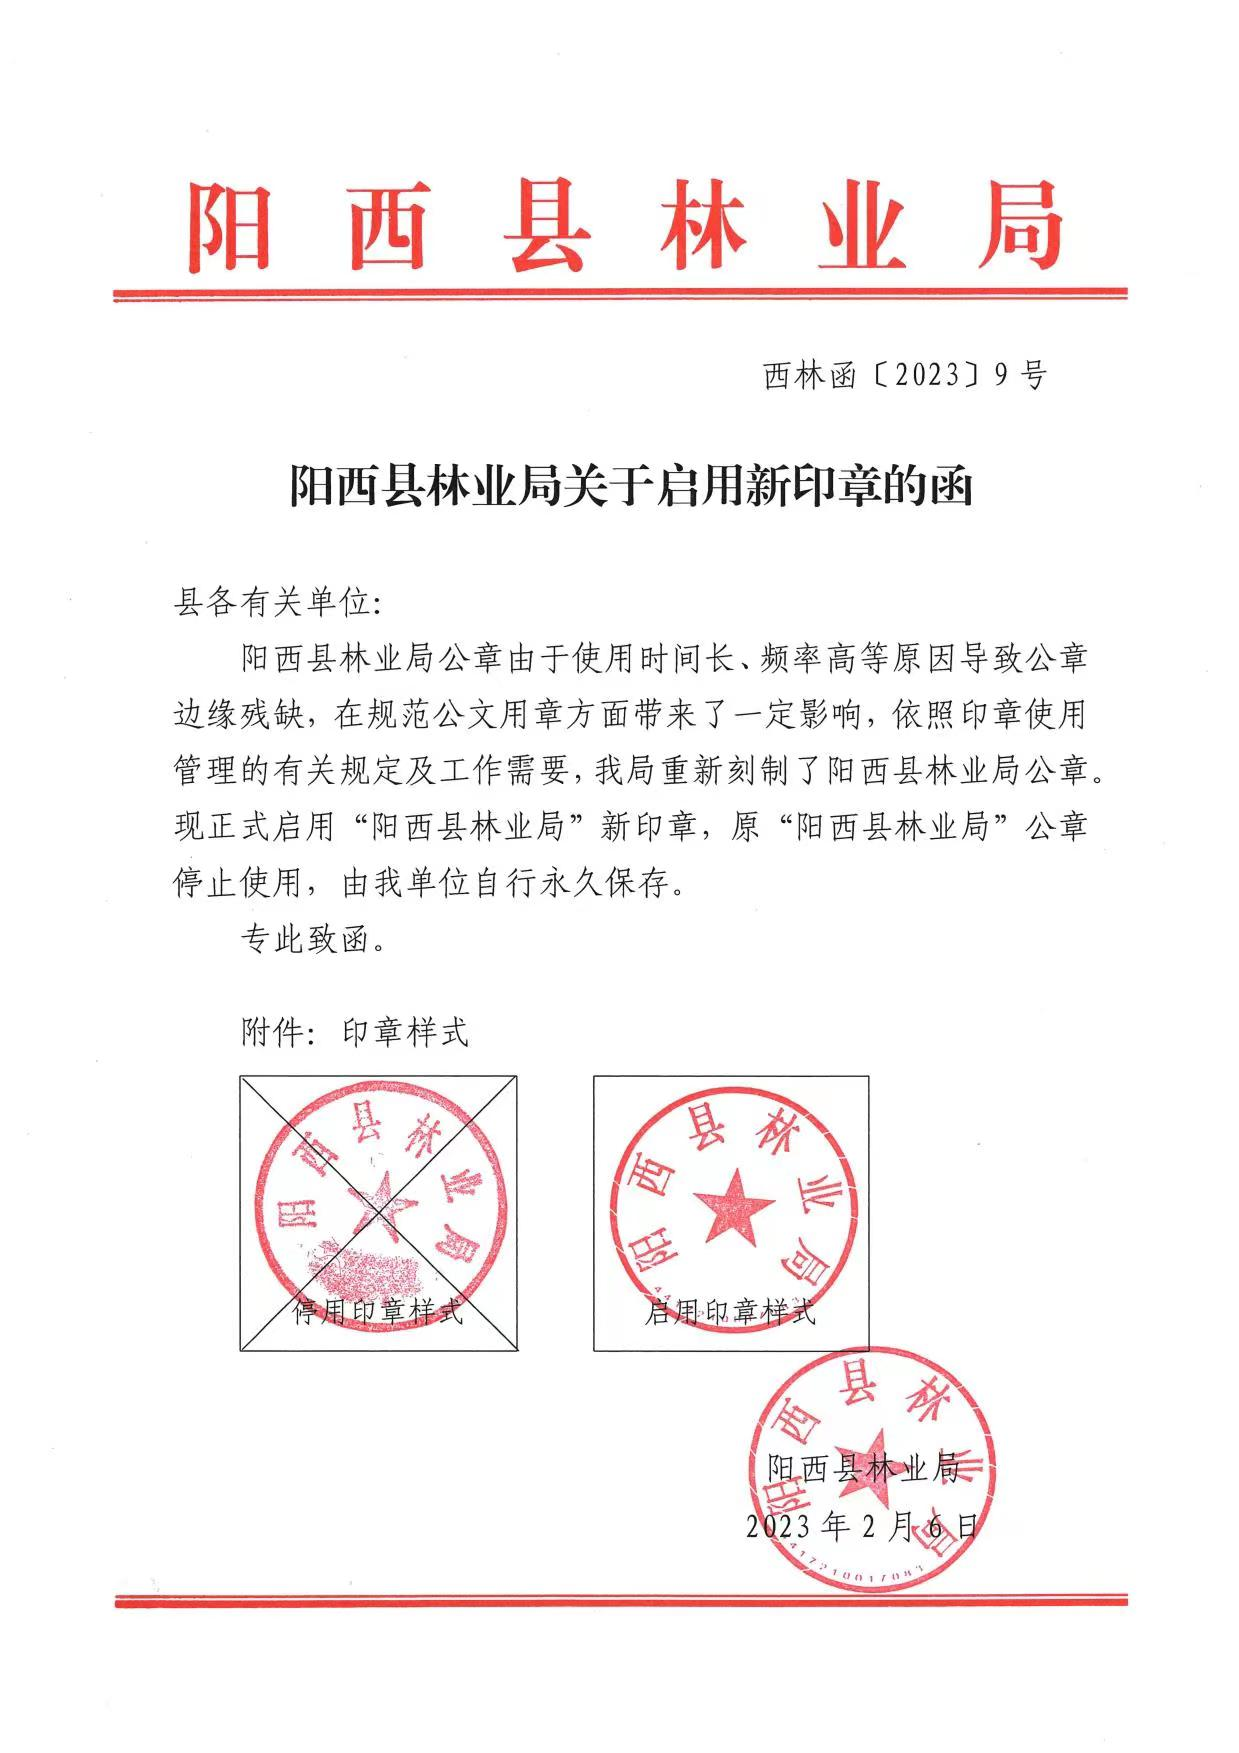 镇安县人民法院关于启用新印章的公告-陕西省镇安县人民法院